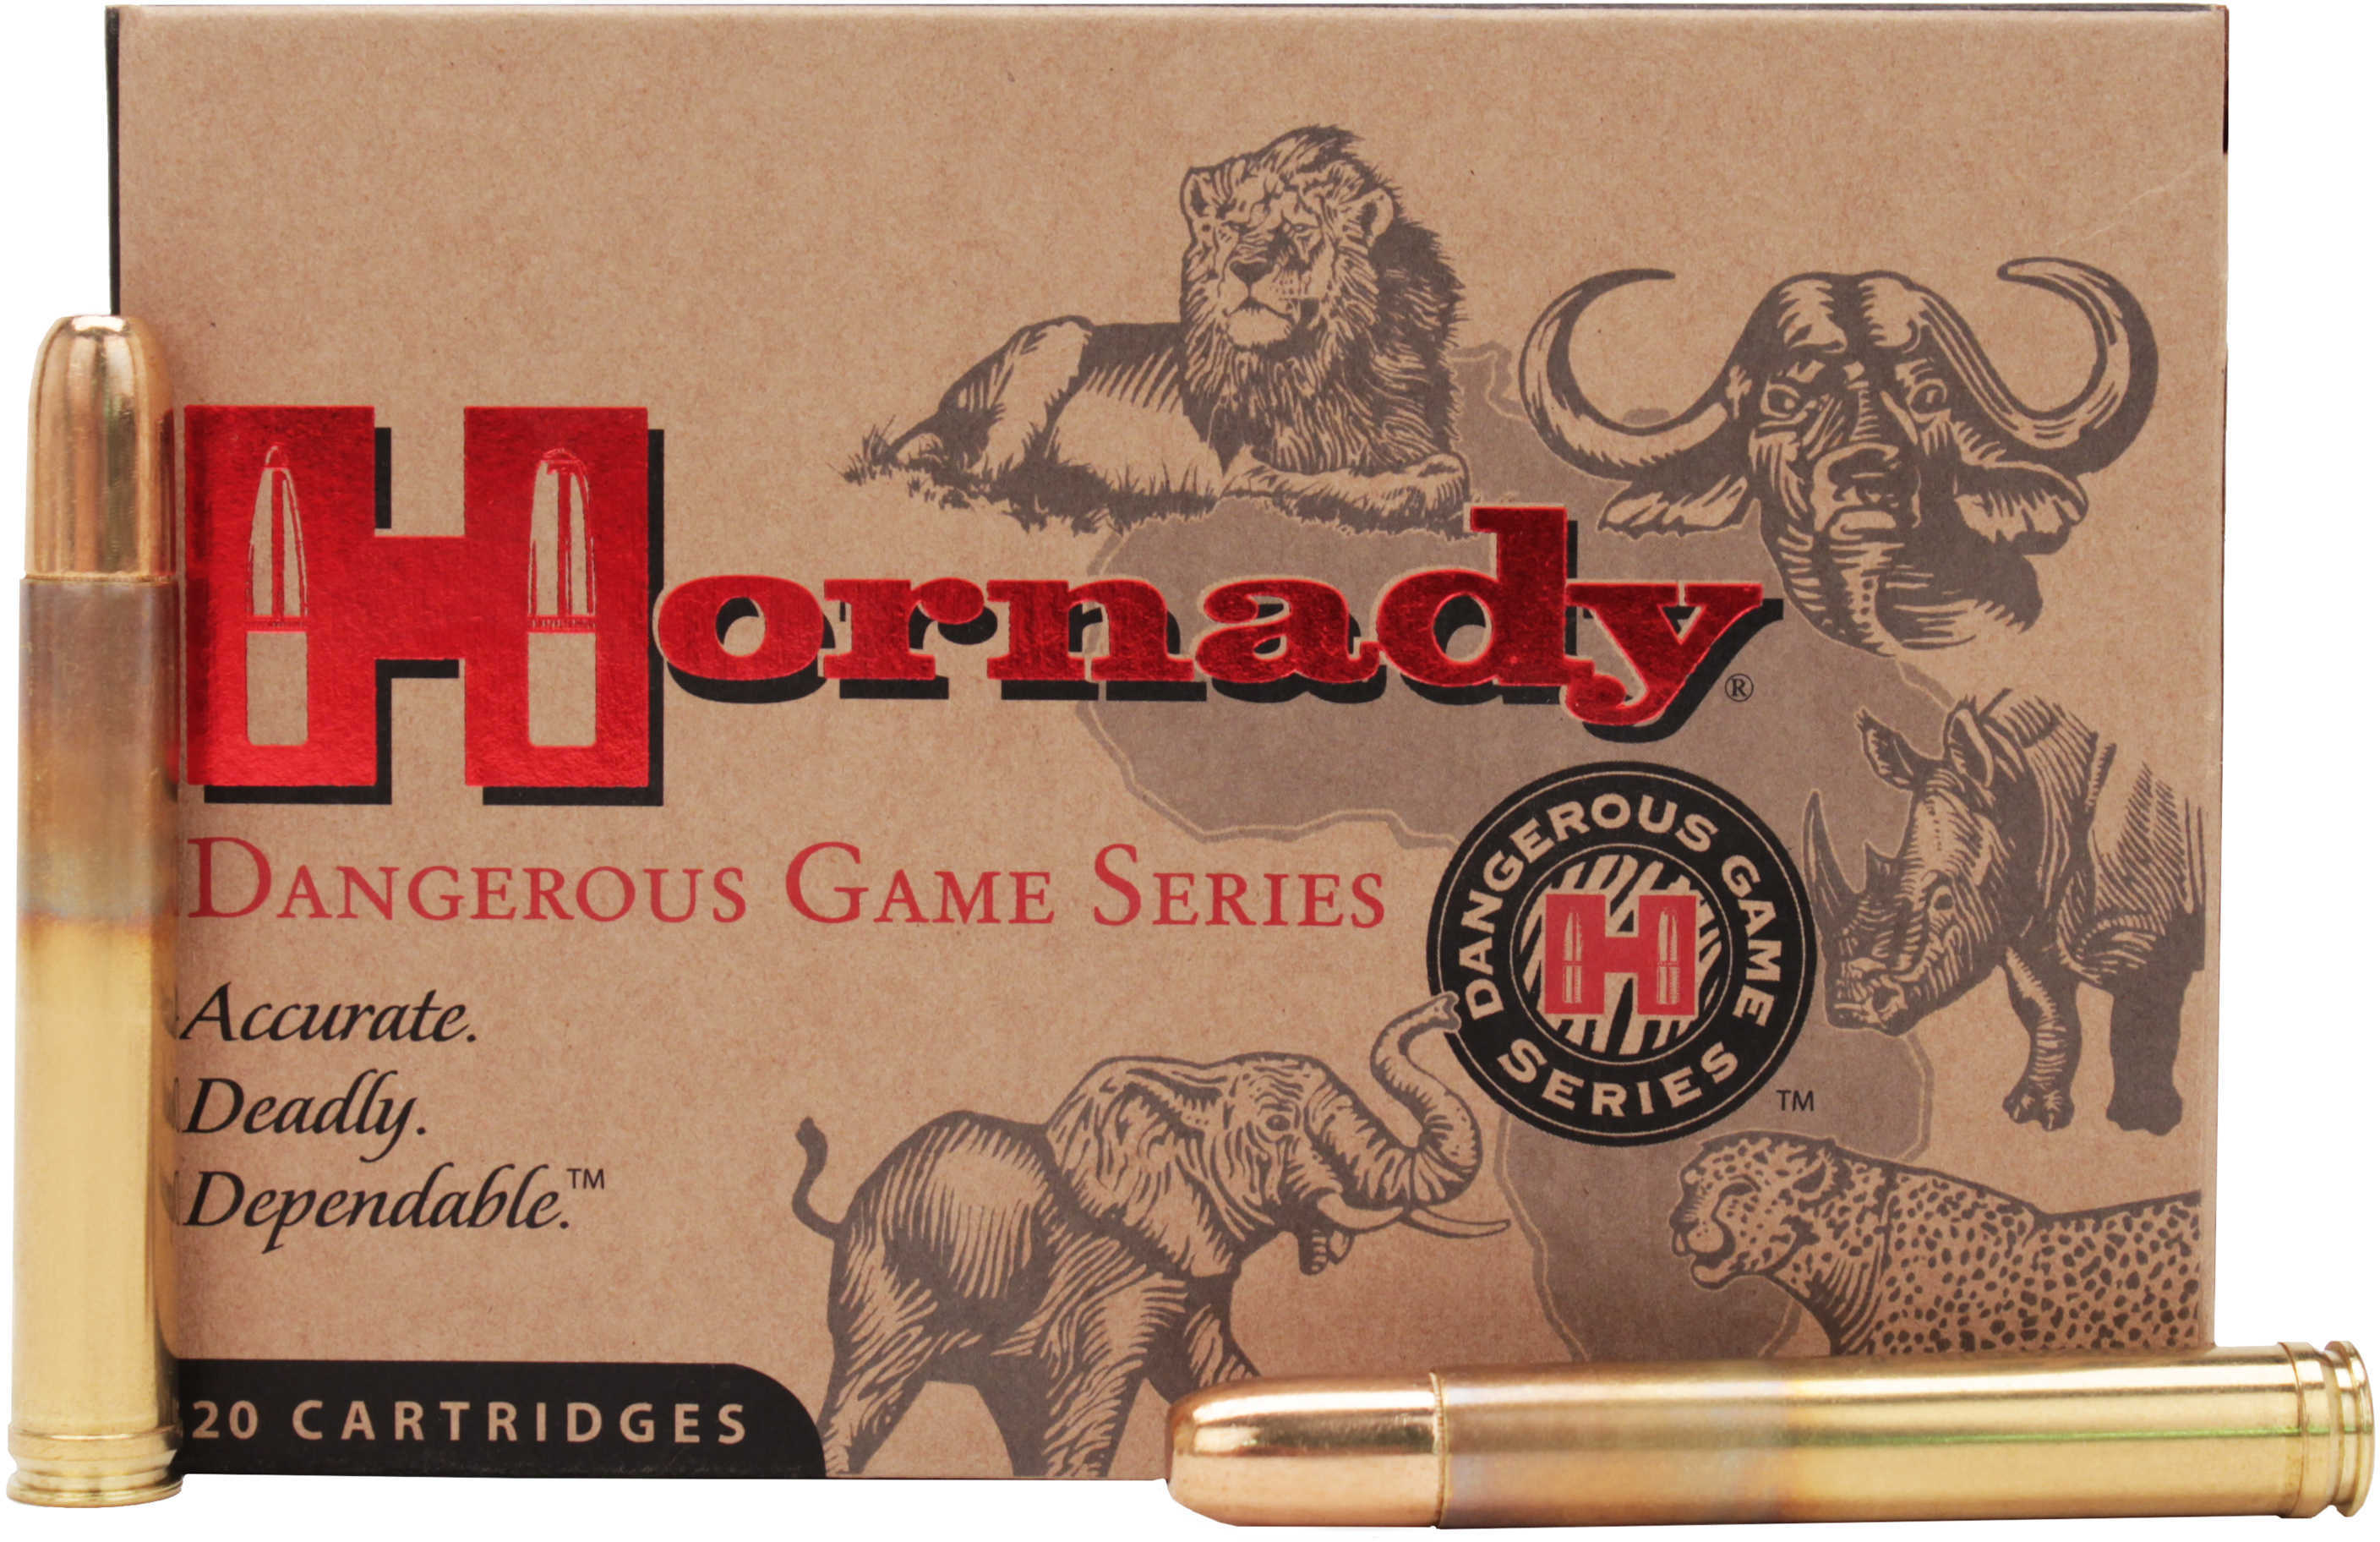 Hornady Dangerous Game Series Rifle Ammunition .458 Lott 500 Gr DGS 2300 Fps - 20/Box